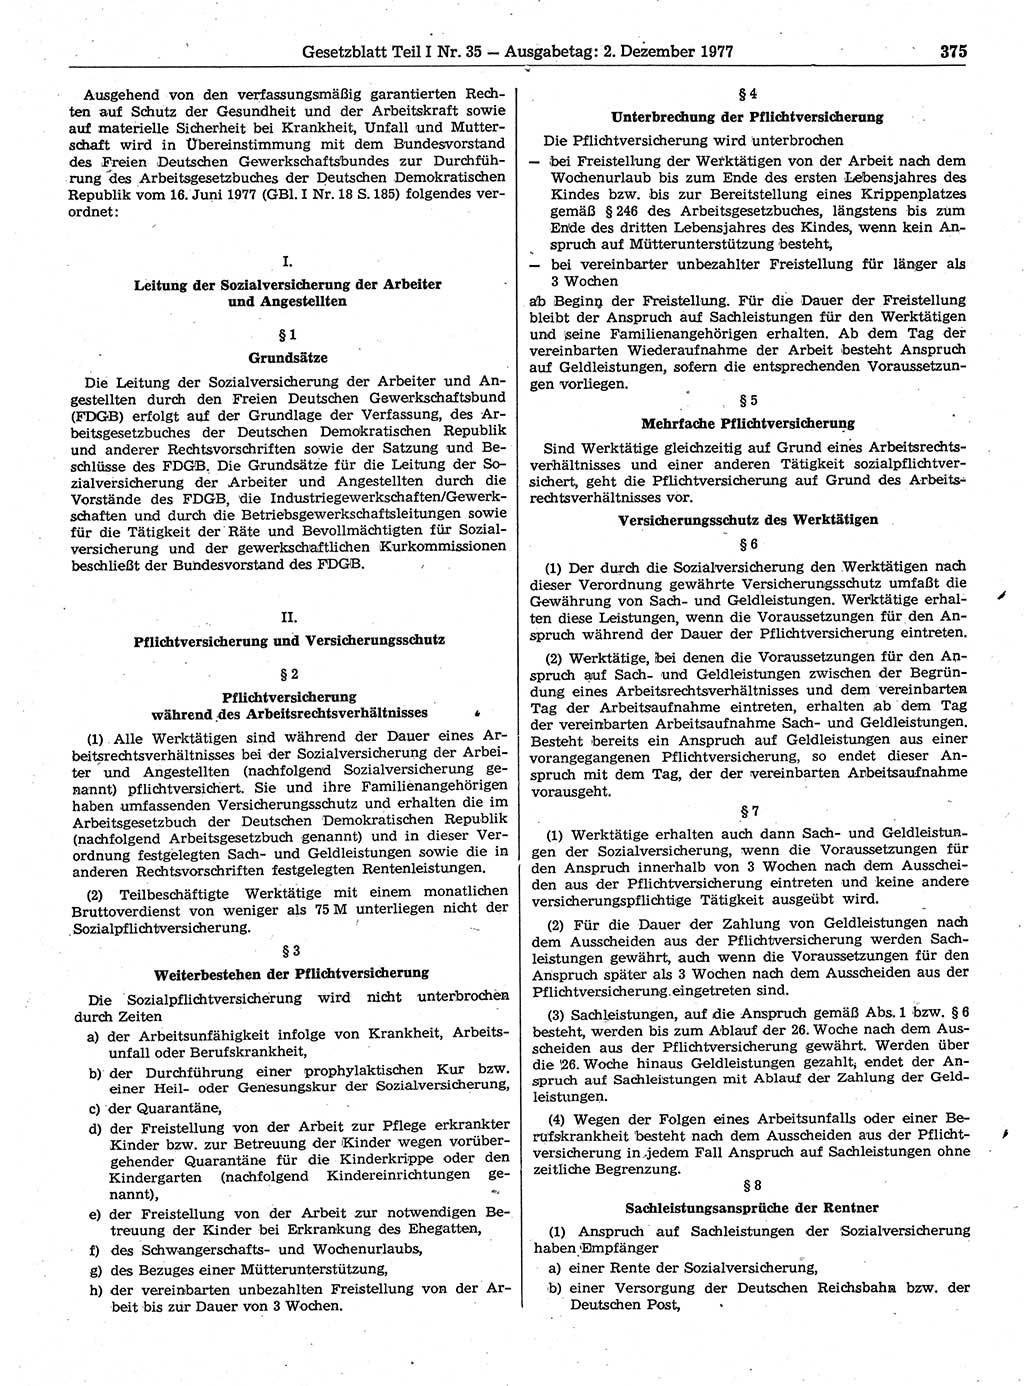 Gesetzblatt (GBl.) der Deutschen Demokratischen Republik (DDR) Teil Ⅰ 1977, Seite 375 (GBl. DDR Ⅰ 1977, S. 375)